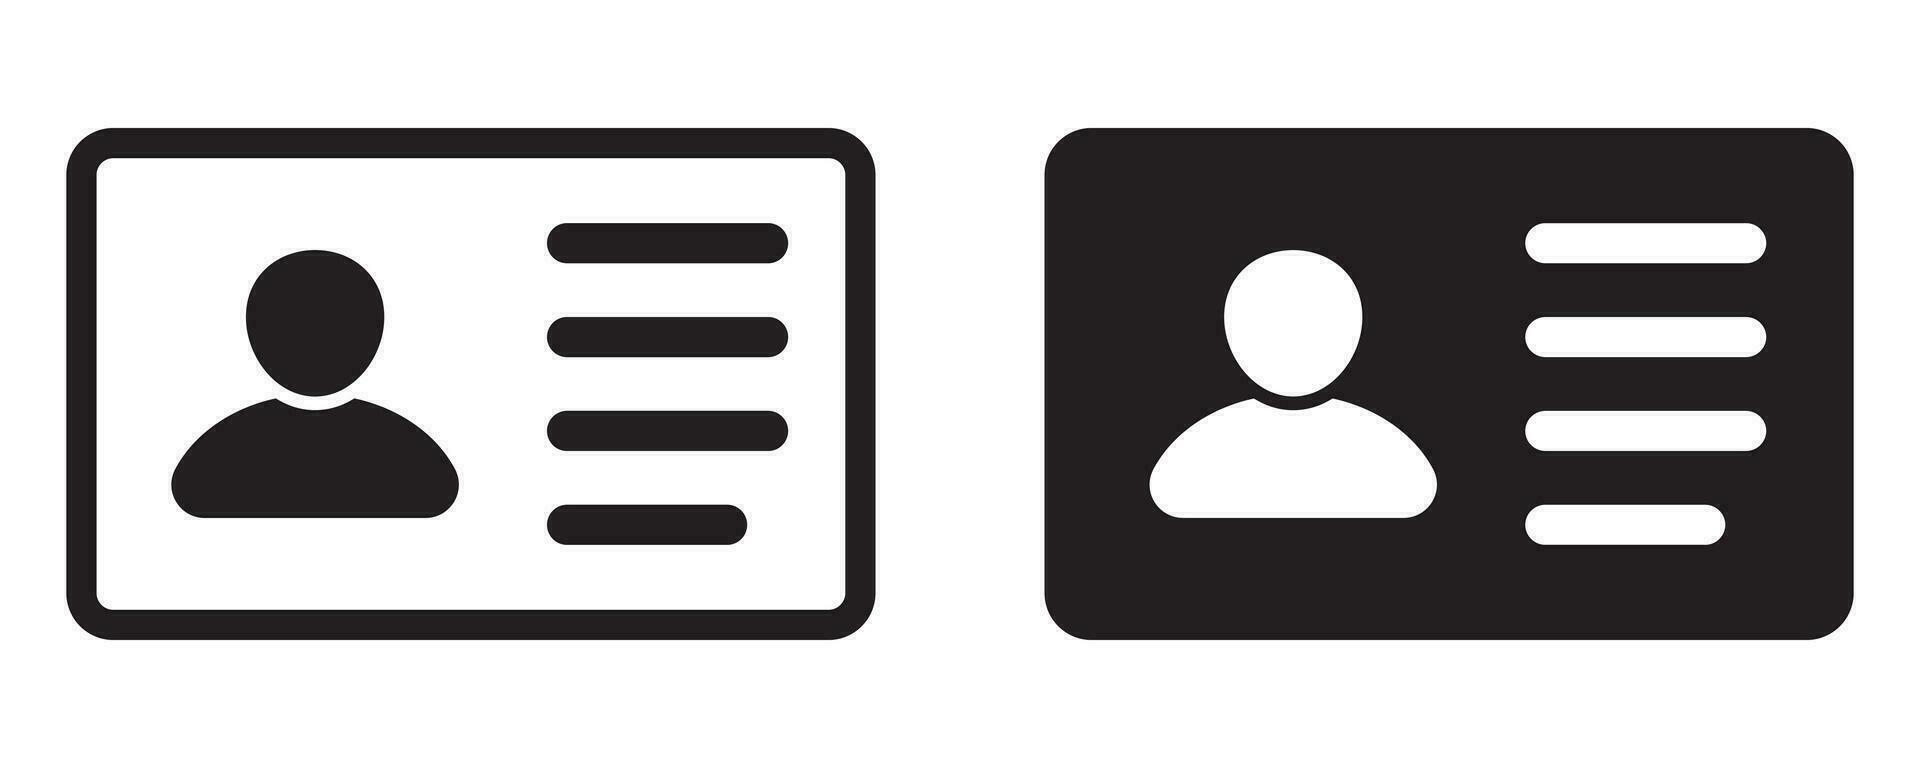 id kort ikon. anställd kontorist kort, förare licens, Identifiering kort, personal Identifiering kort symbol. design för hemsida och mobil app. vektor